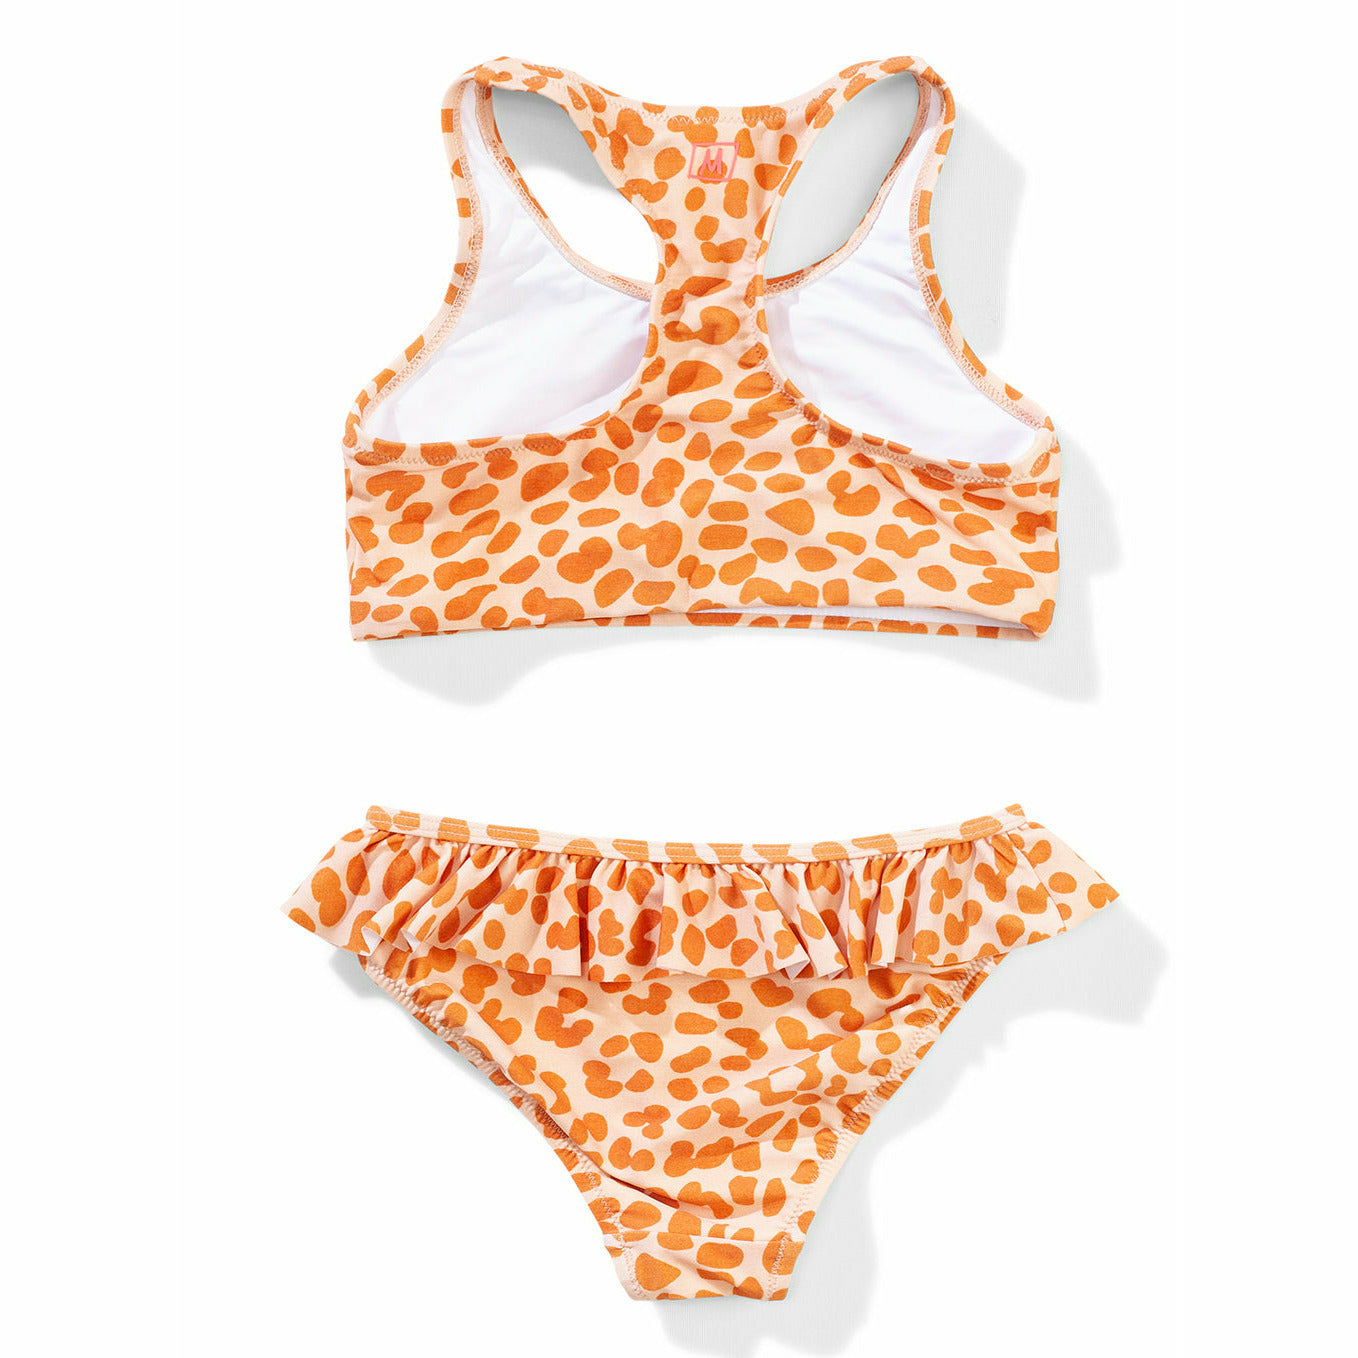 Kitty Ride Bikini - Yarn Leopard